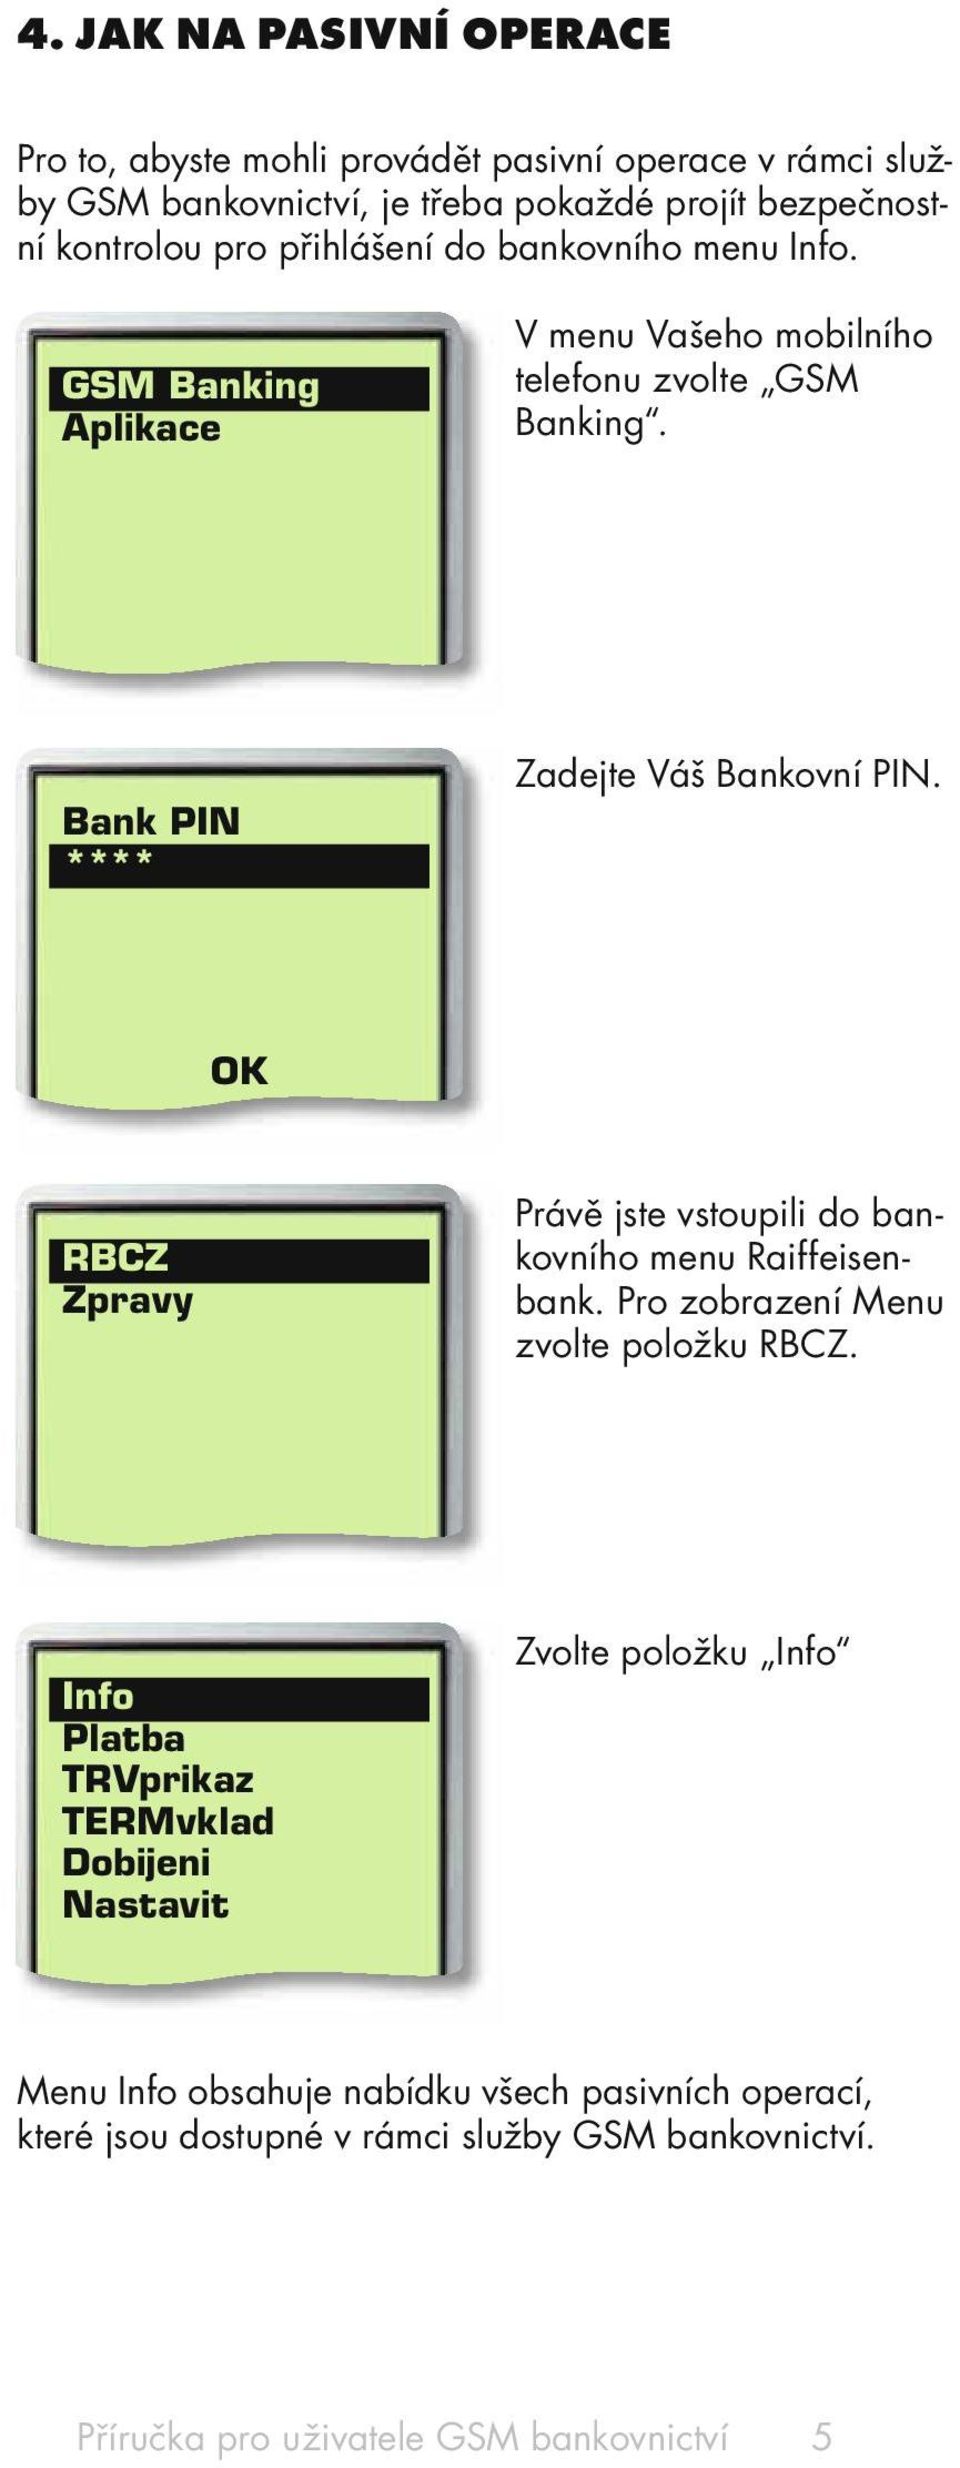 RBCZ Zpravy Právě jste vstoupili do bankovního menu Raiffeisenbank. Pro zobrazení Menu zvolte položku RBCZ.